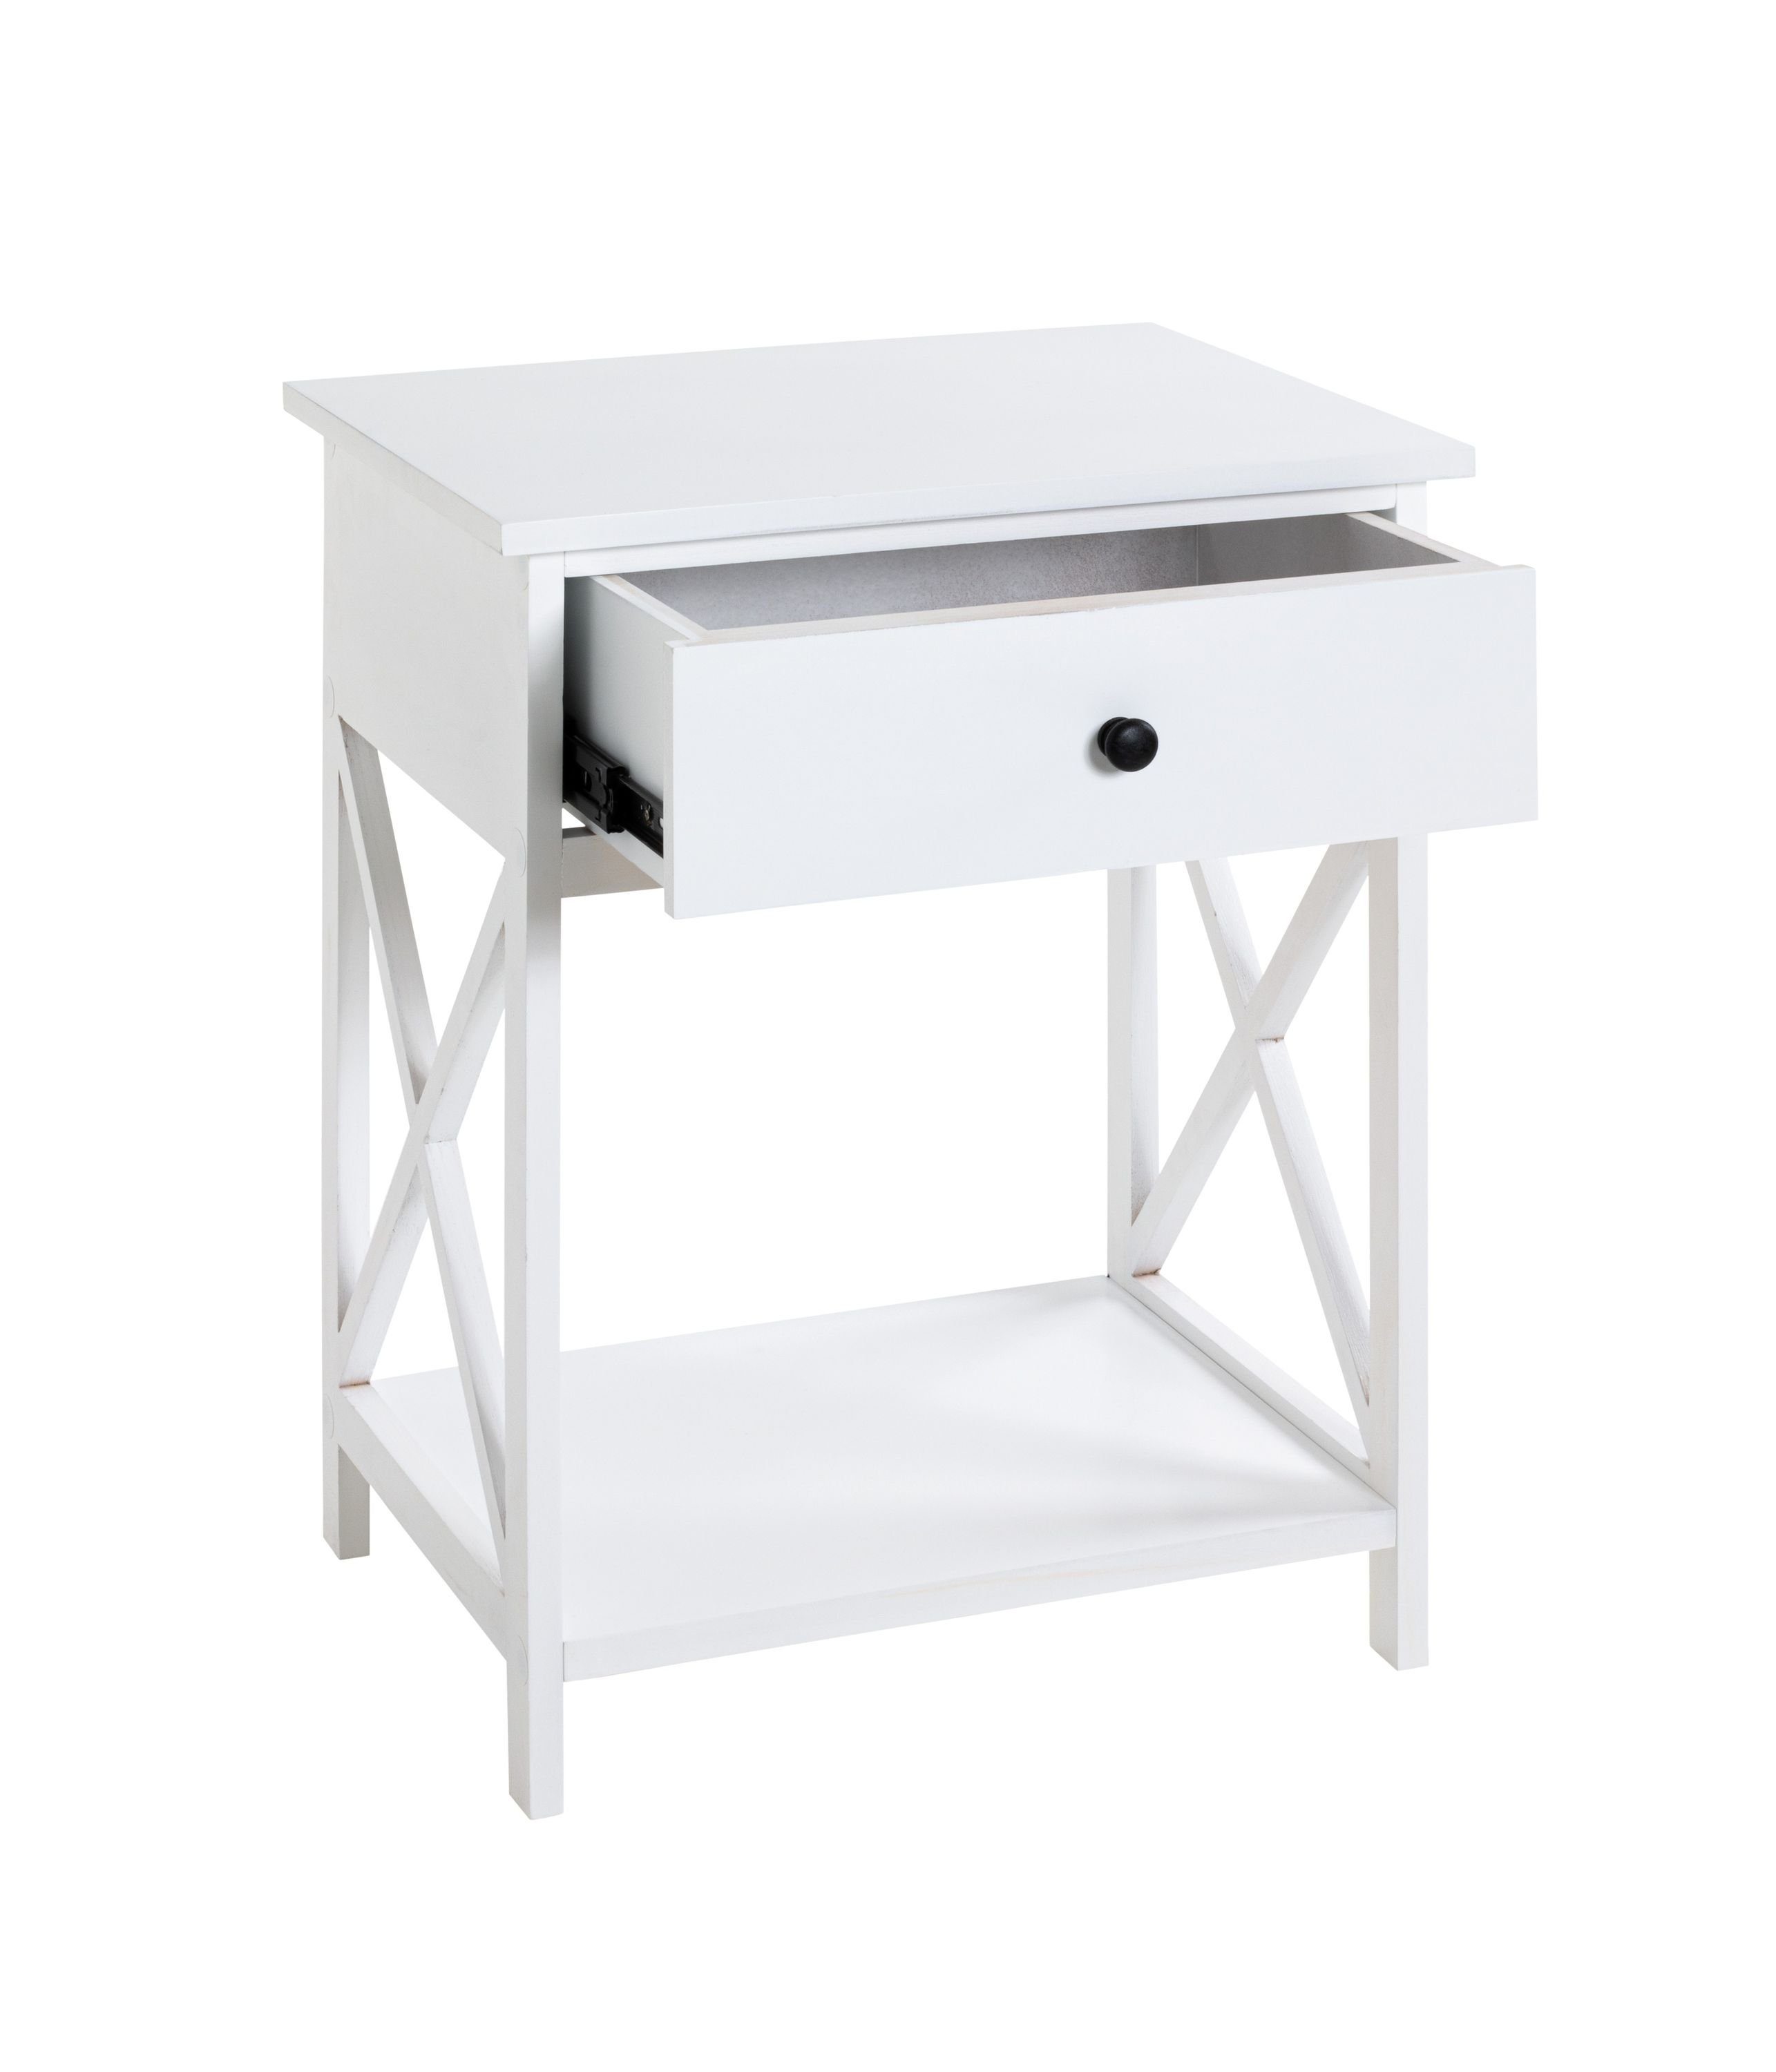 HAKU Beistelltisch Beistelltisch, HAKU Möbel 46x60x35 weiß cm) 46x60x35 BHT (BHT Beistelltisch cm